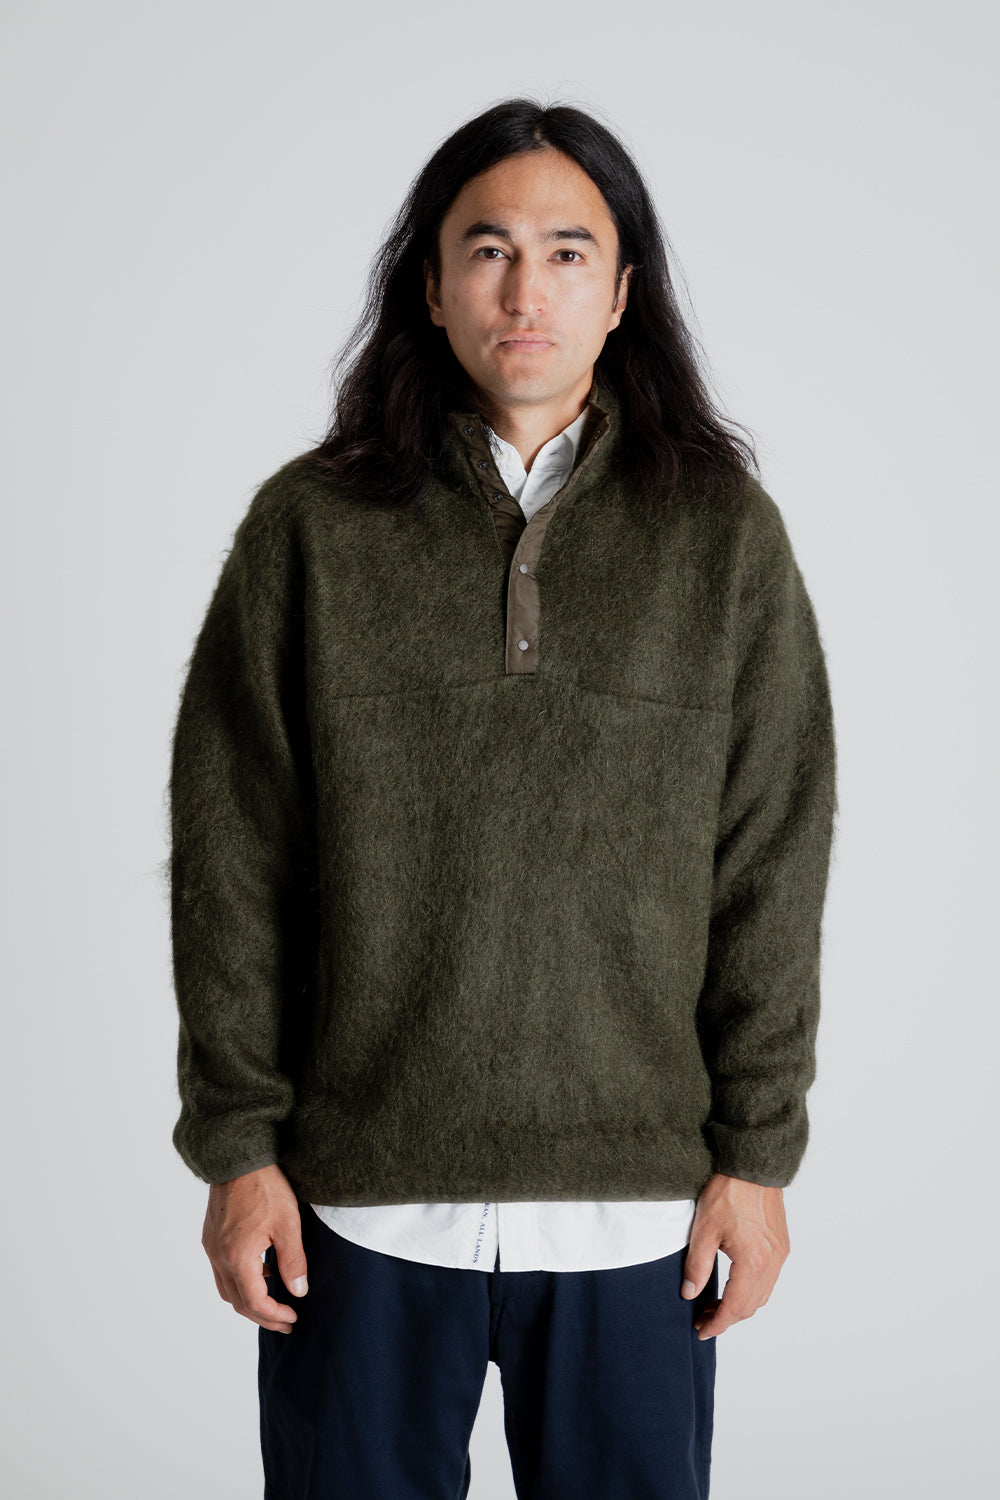 Nanamica Pullover Sweater in Khaki